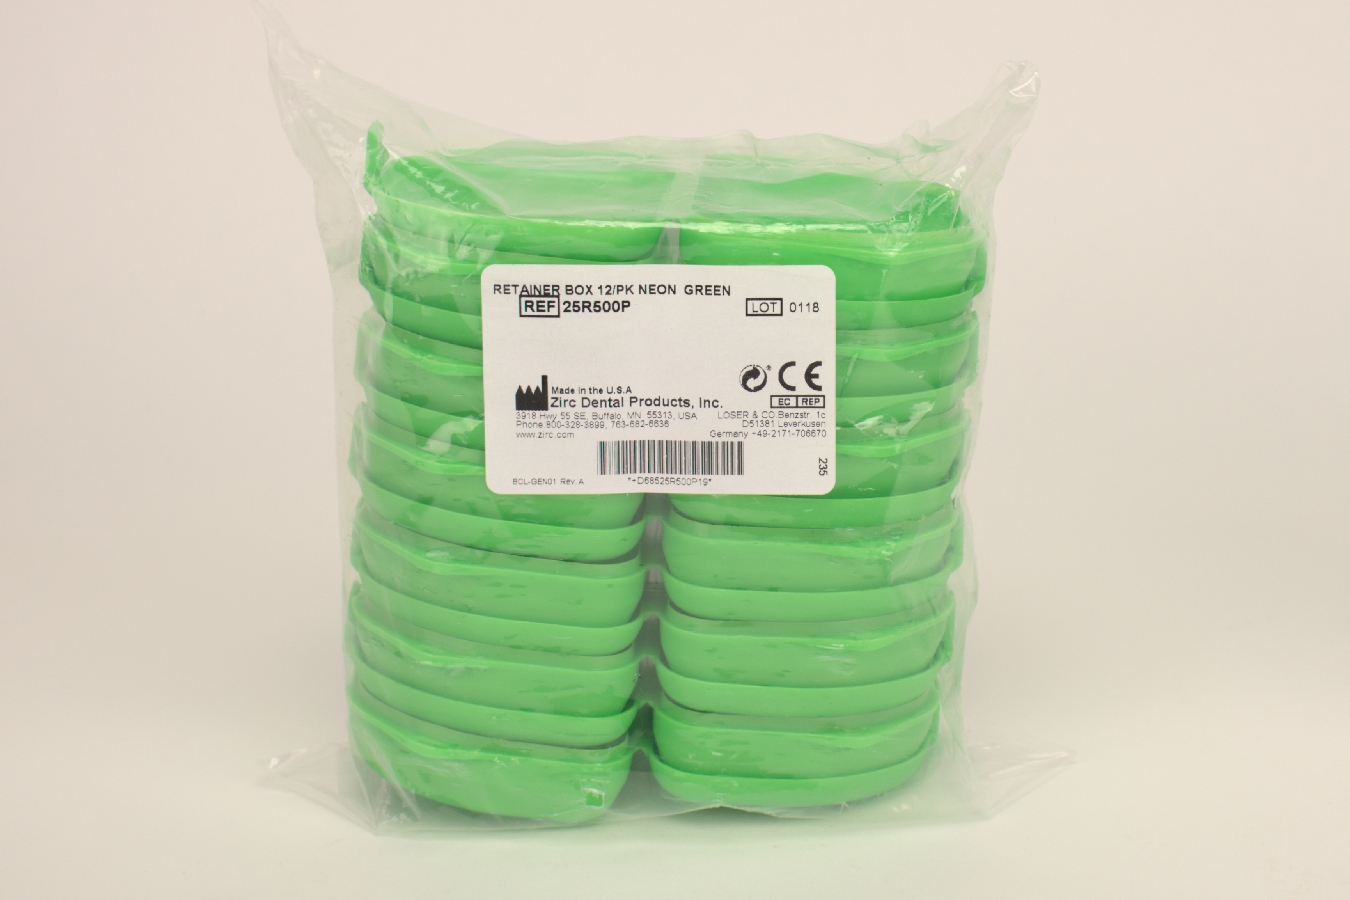 Spangenbox flach neon-grün  12 Stück